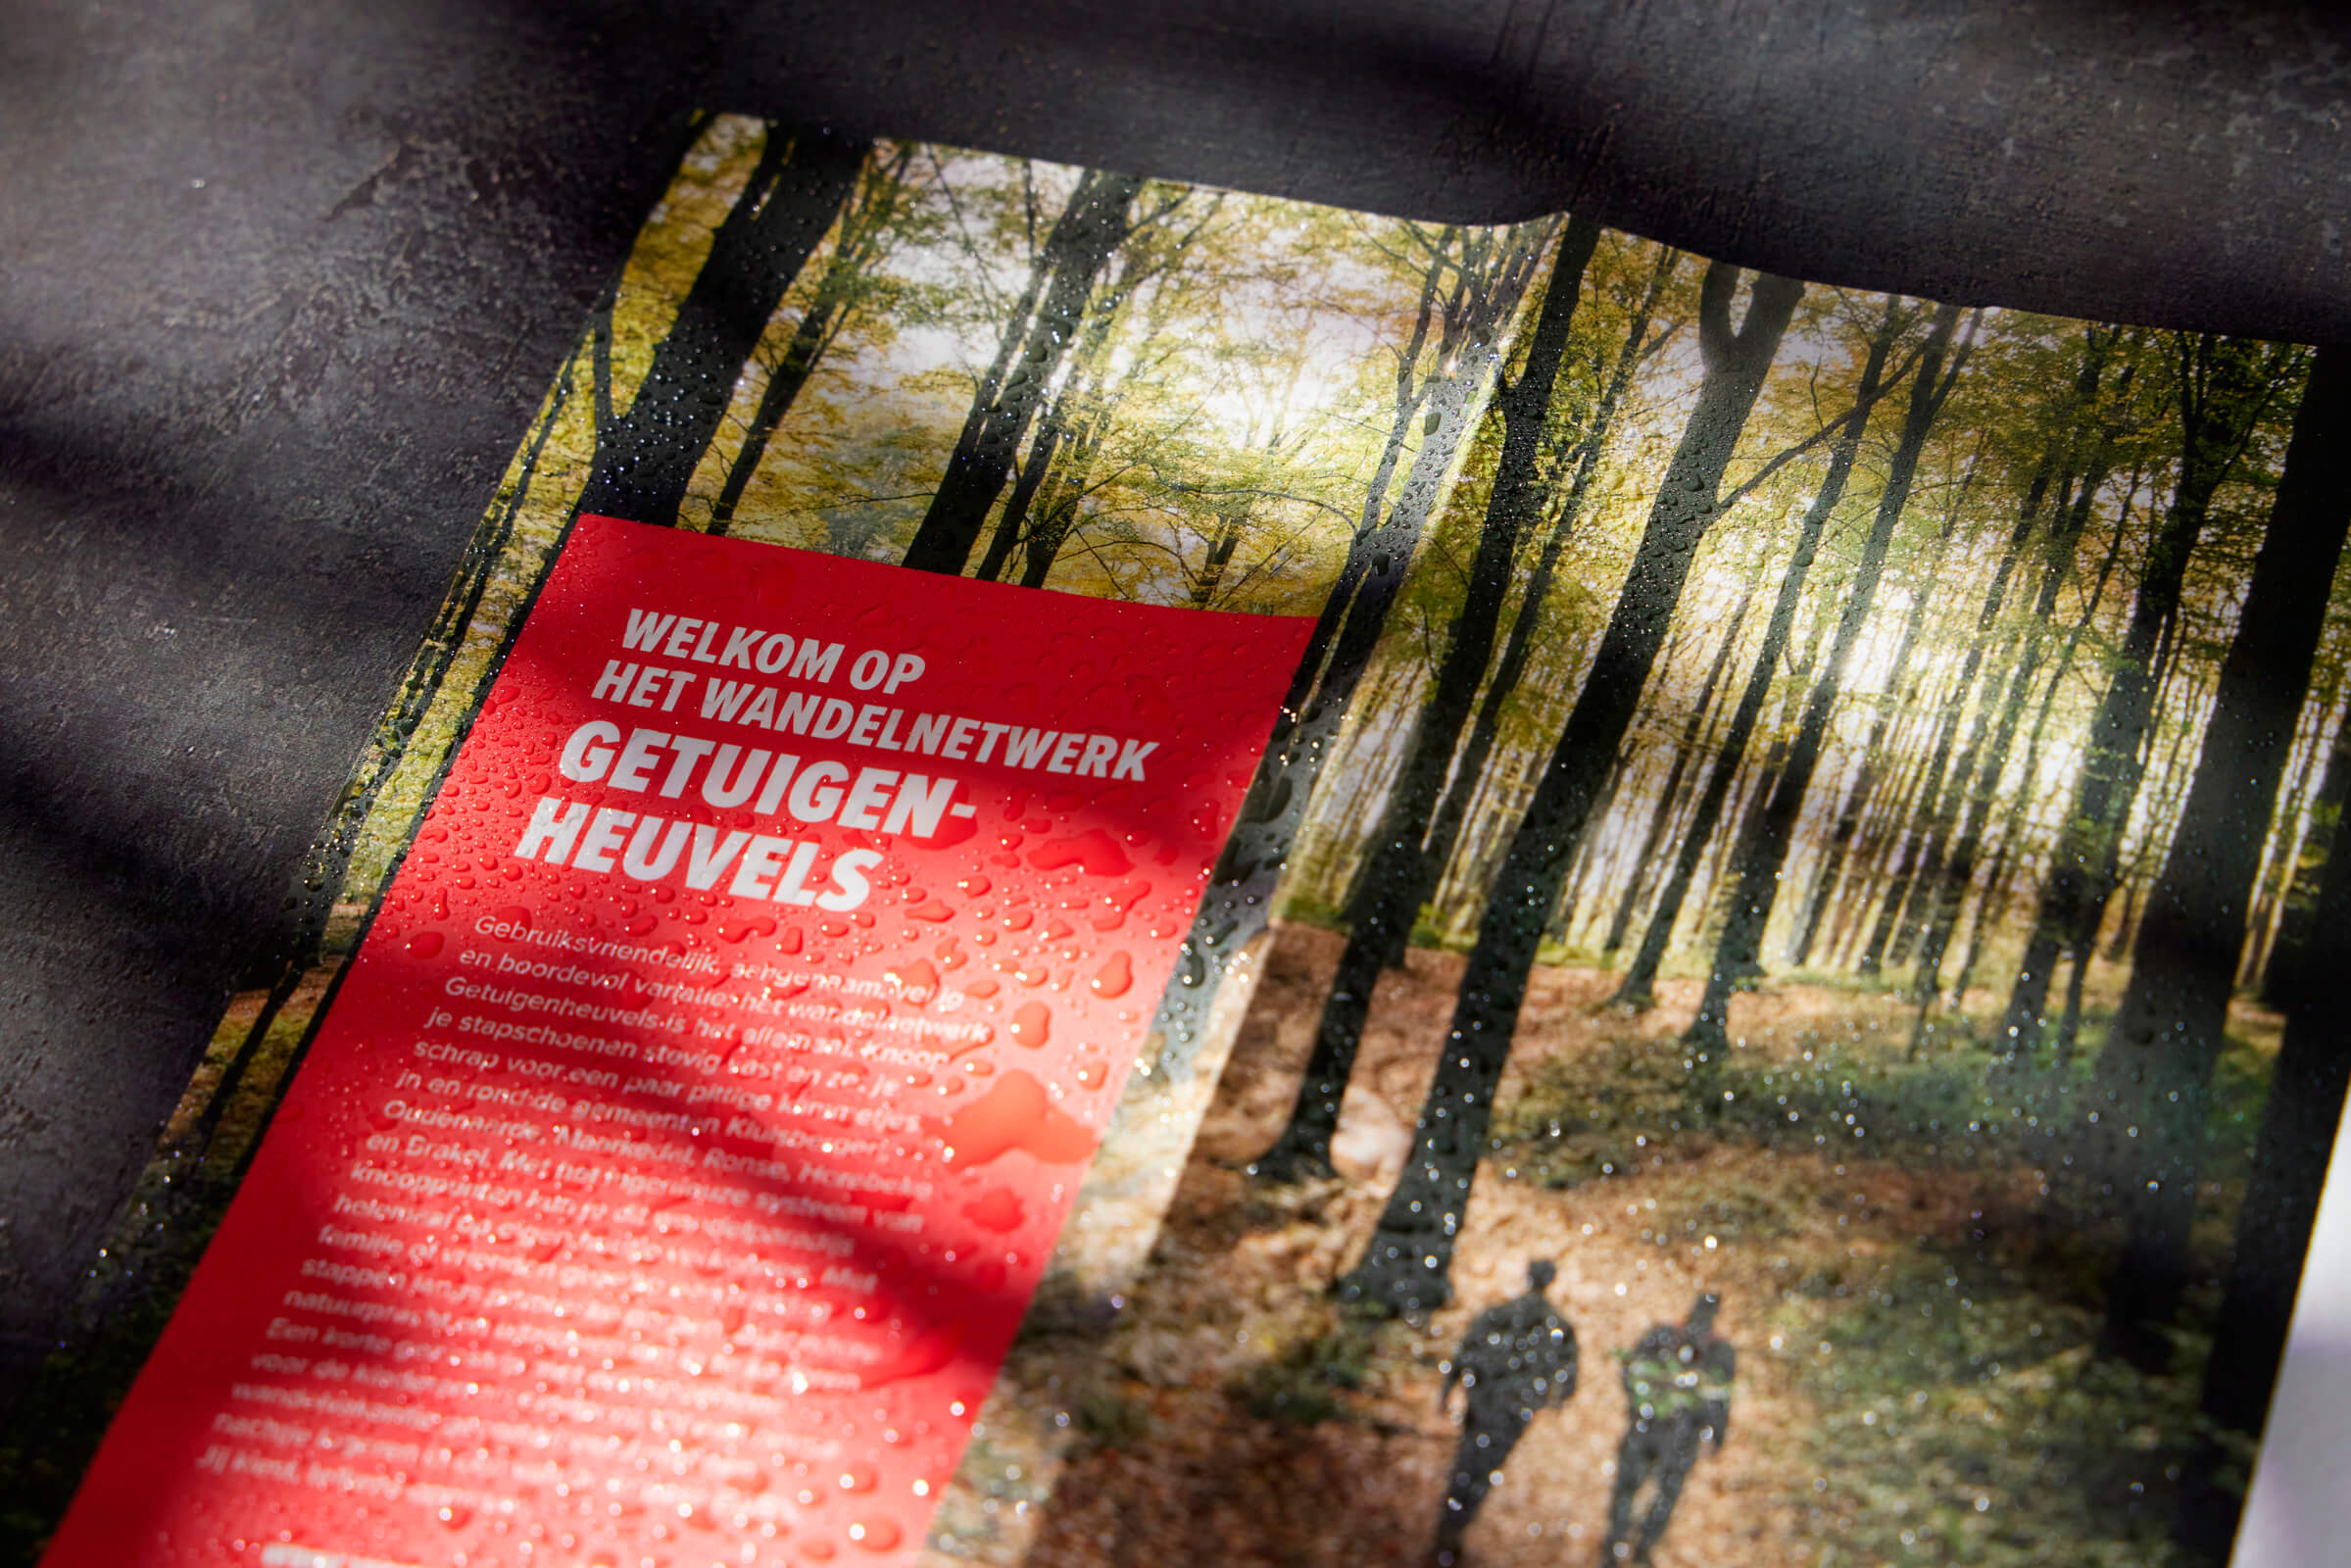 Voor de provincie Oost-Vlaanderen drukten we deze wandelroute kaarten op waterbestendig papier, gemaakt van steen.